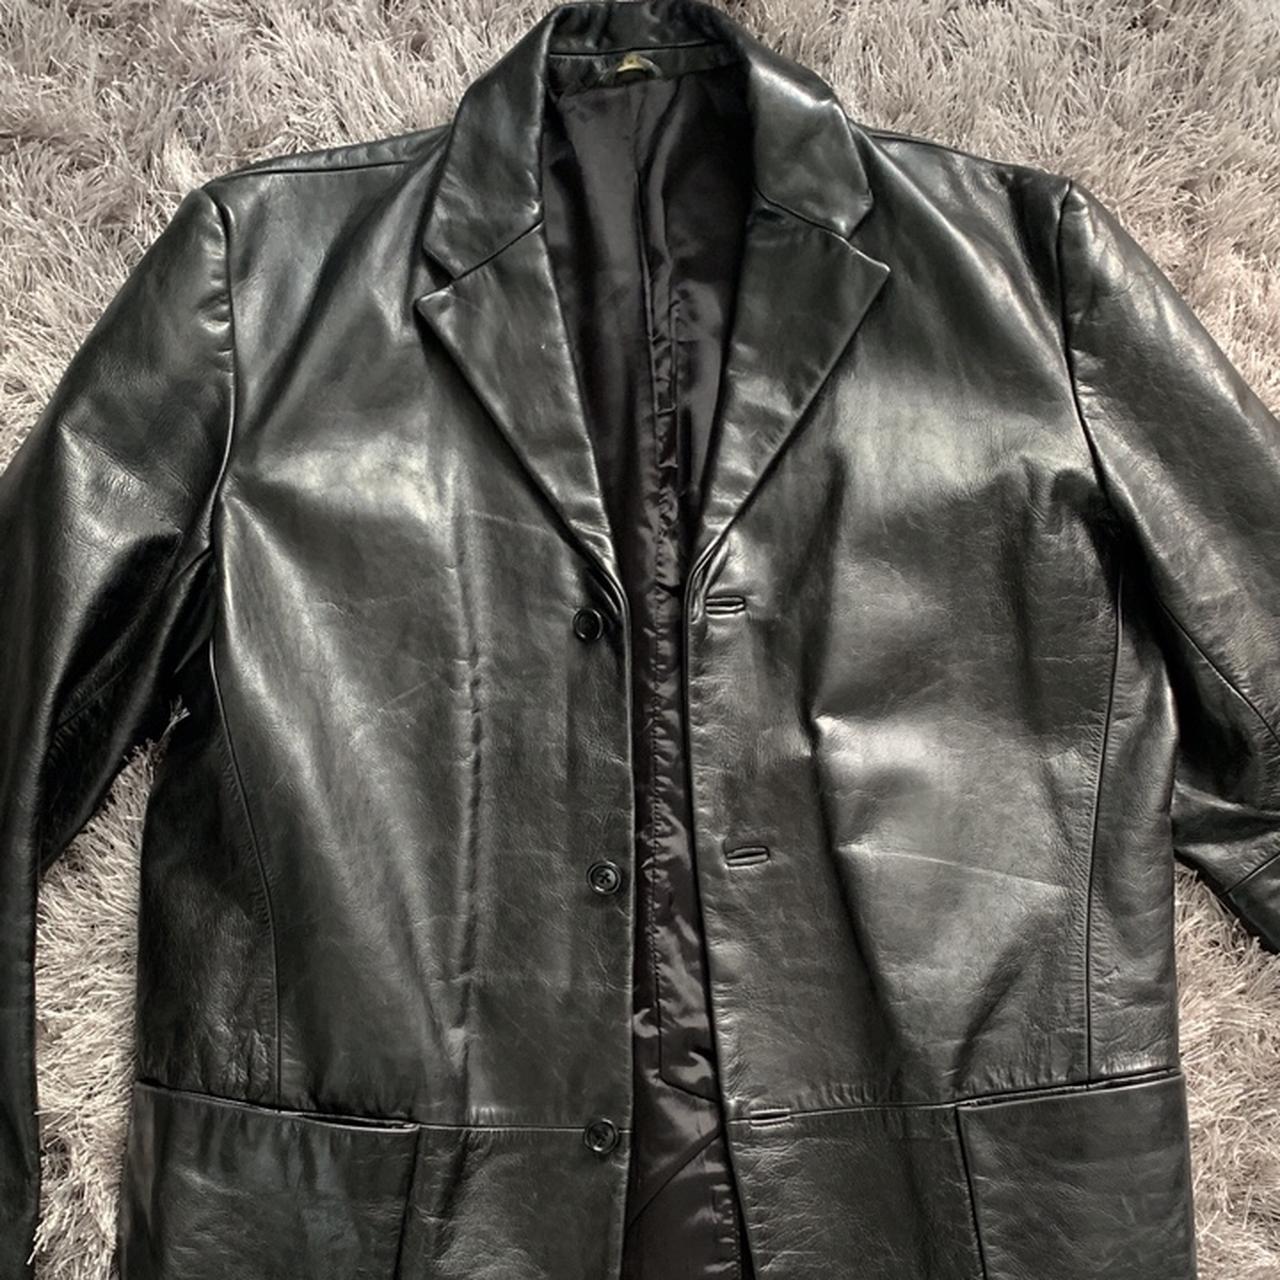 Black Vintage leather jacket 100% leather Great... - Depop